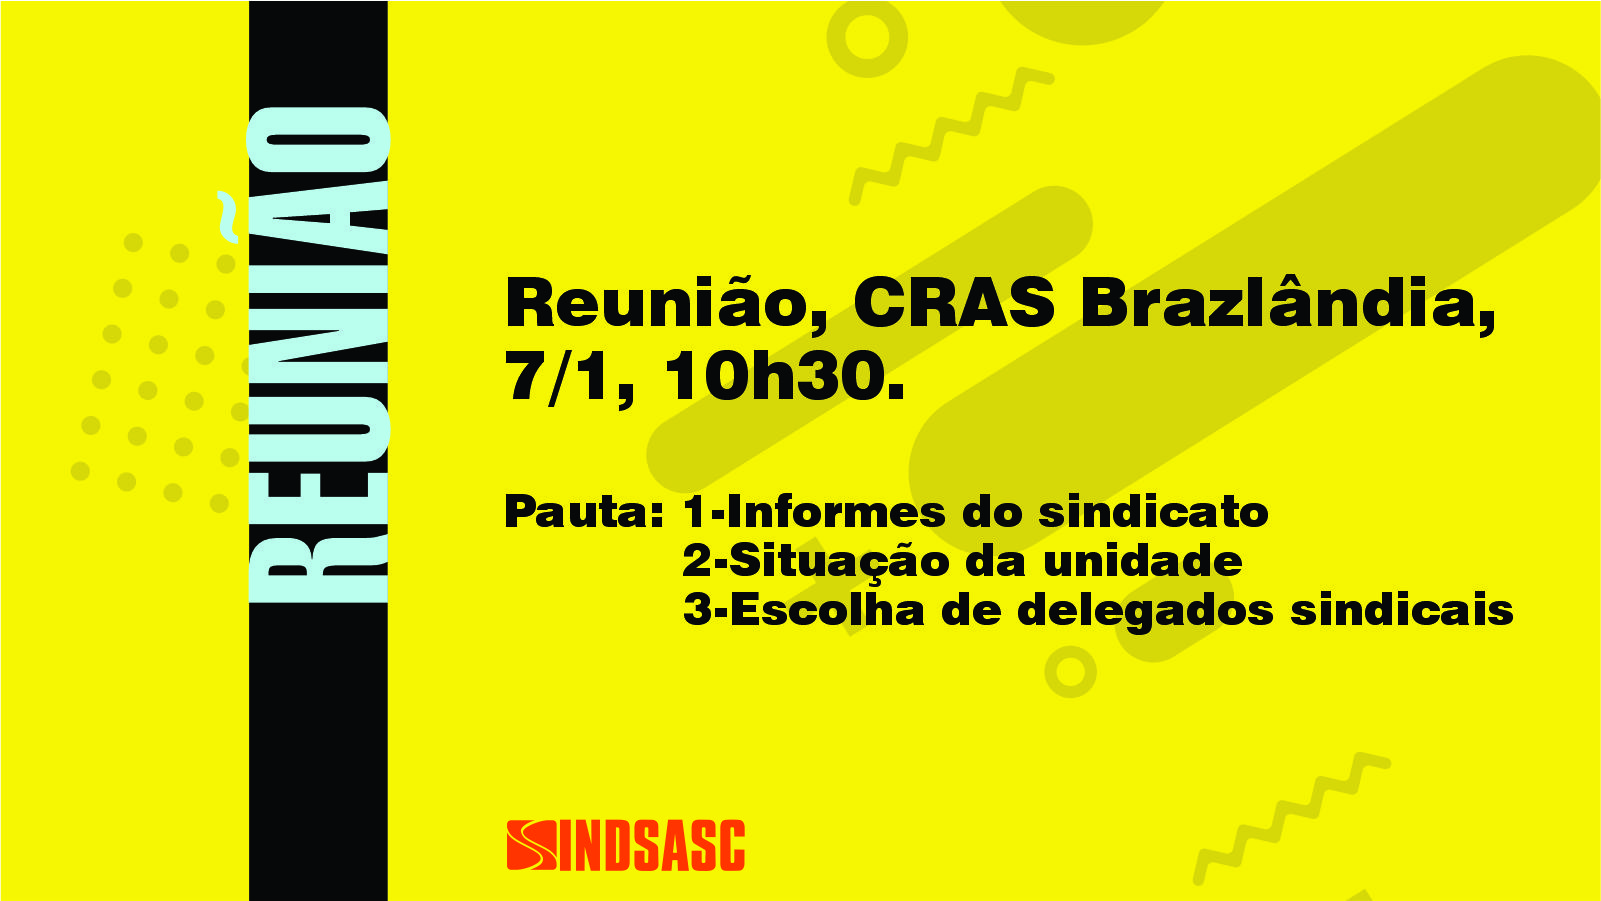 Reunião, CRAS Brazlândia, 7/1, 10h30.